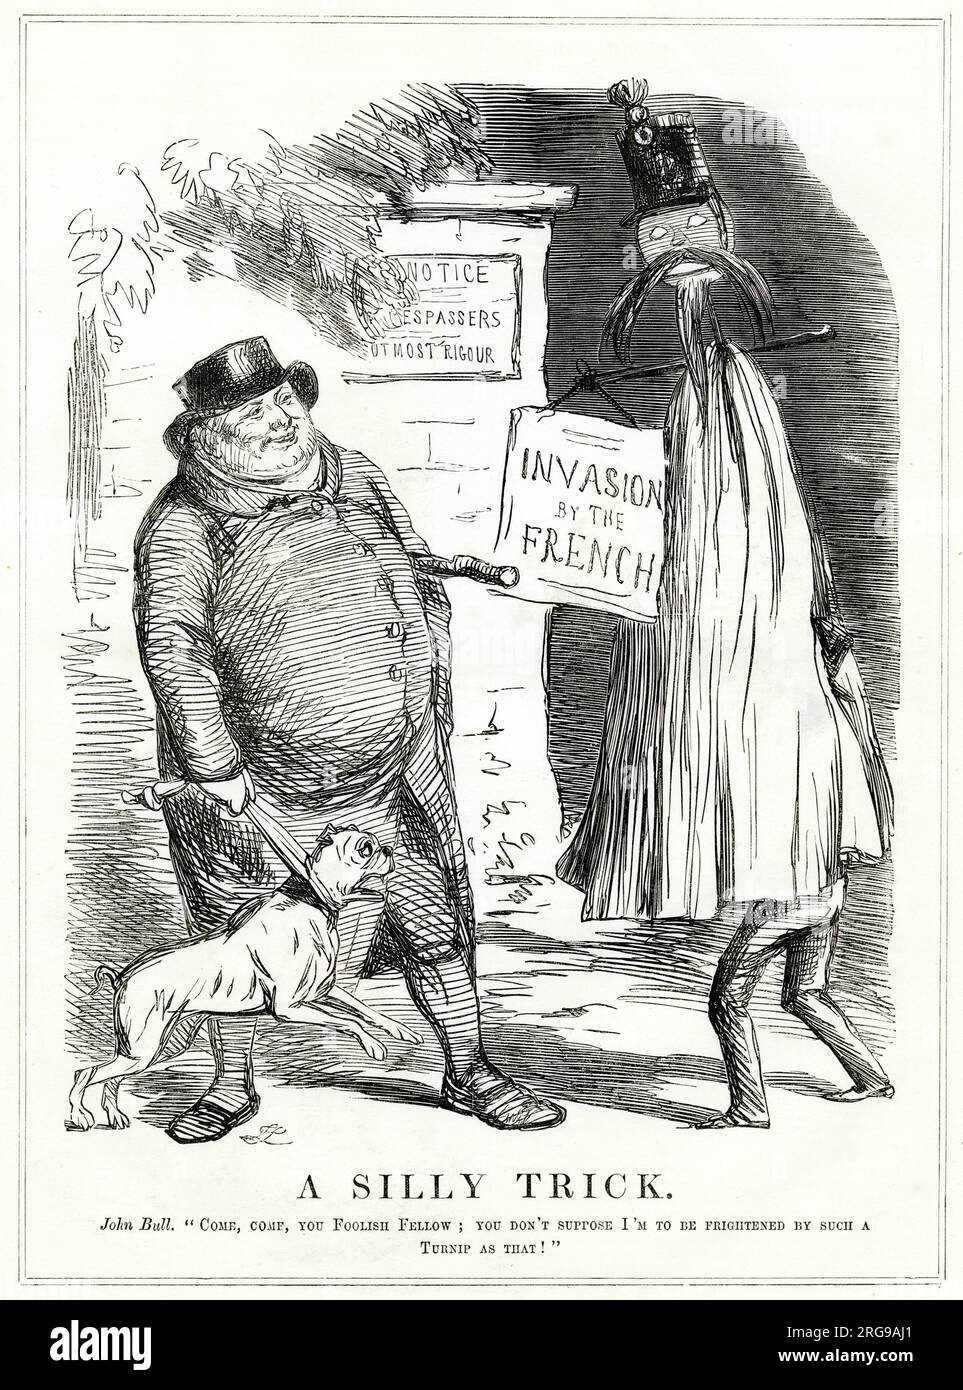 Cartoon, Ein alberner Trick -- Bauer John Bull kann nicht von einem Trickster mit Rübenkopf getäuscht werden, der vorgibt, Ein einmarschierender französischer Soldat zu sein. Stockfoto